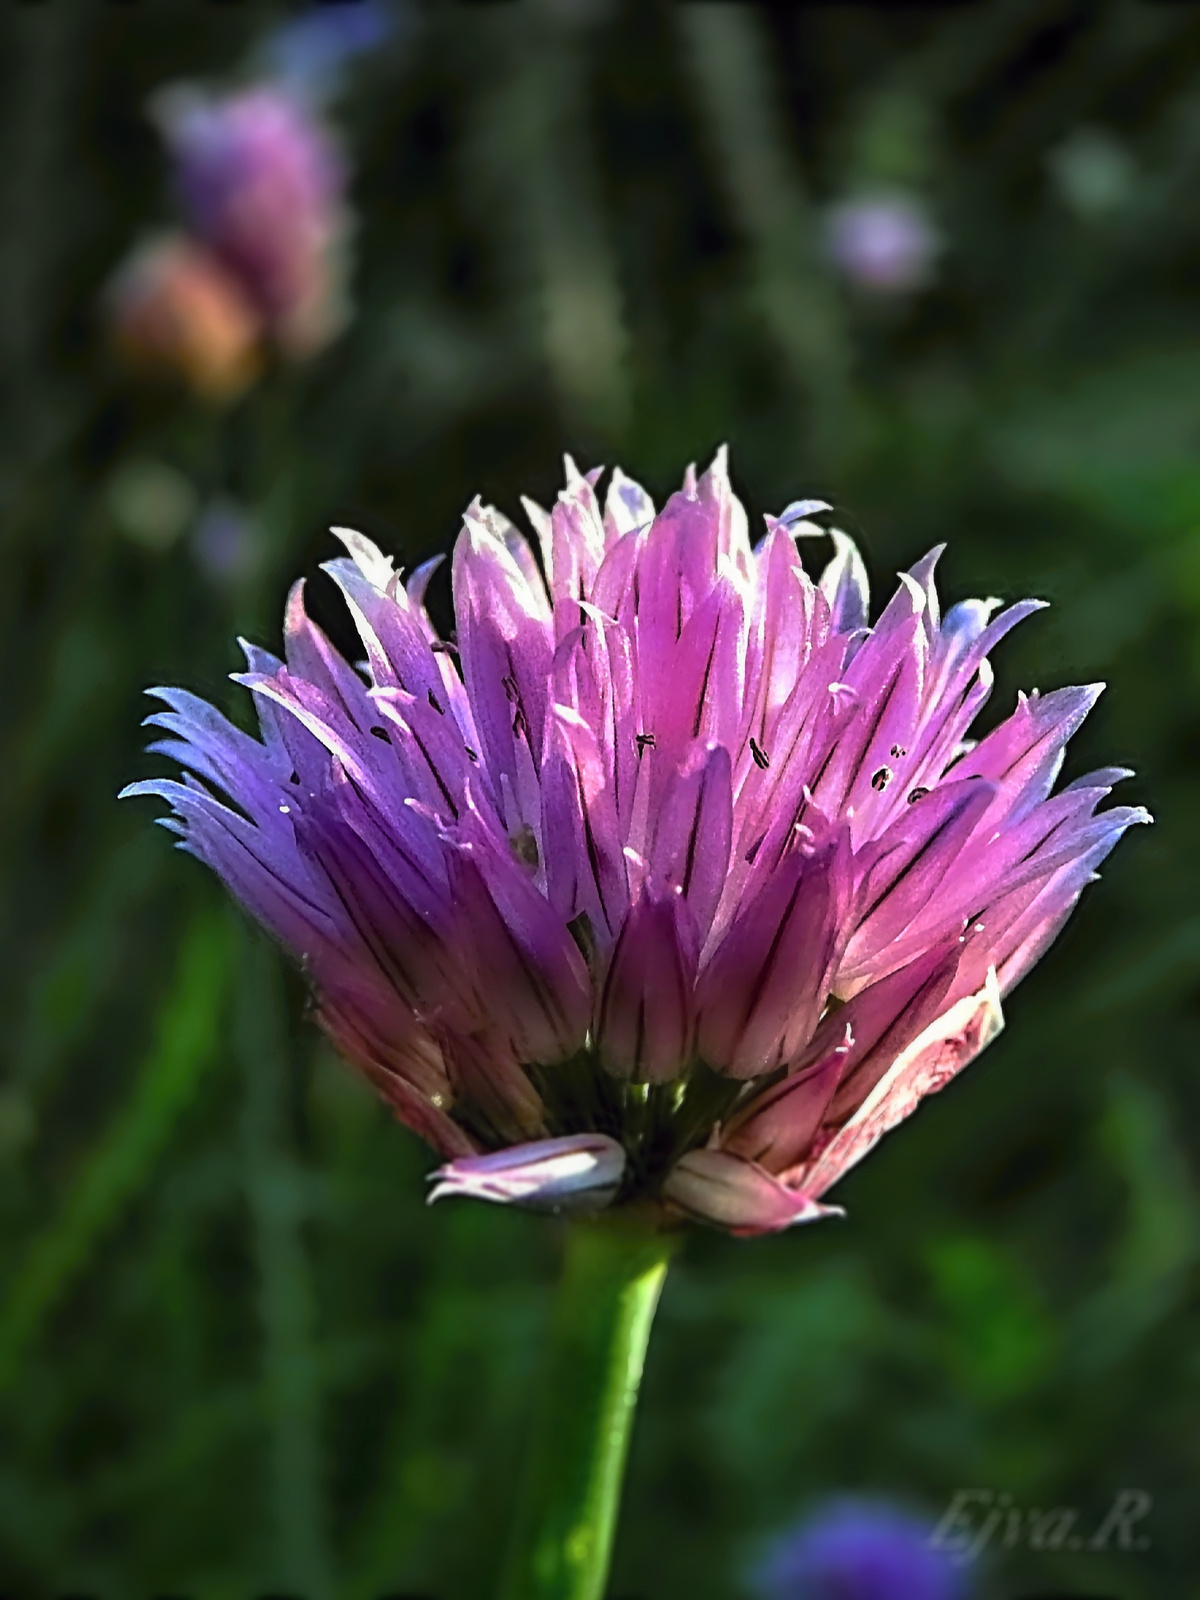 A metélőhagyma vagy snidling (Allium schoenoprasum)